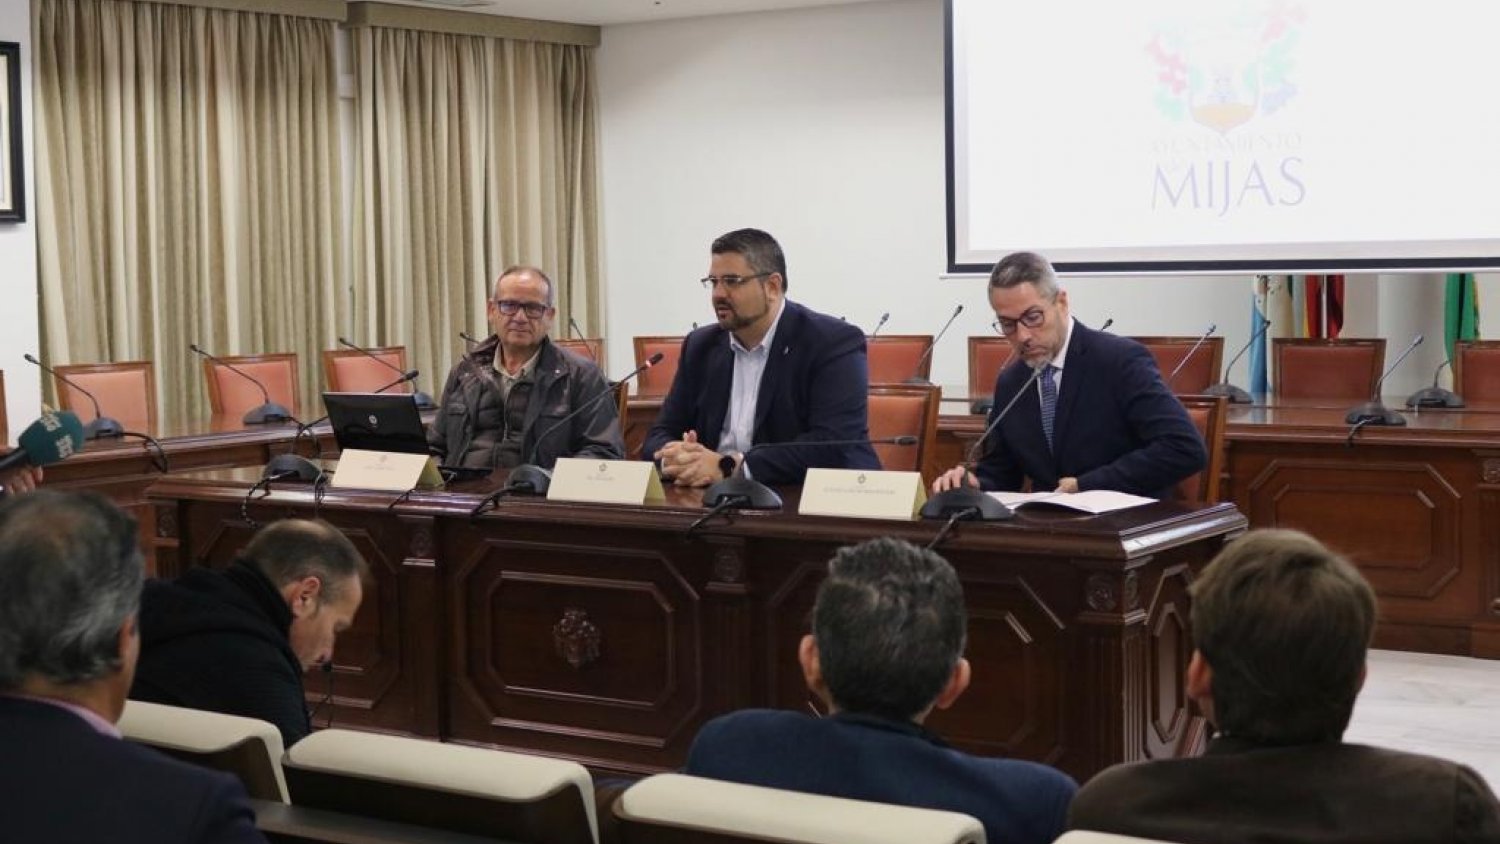 La Diputación presenta dos herramientas digitales para la gestión de los ayuntamientos de la provincia